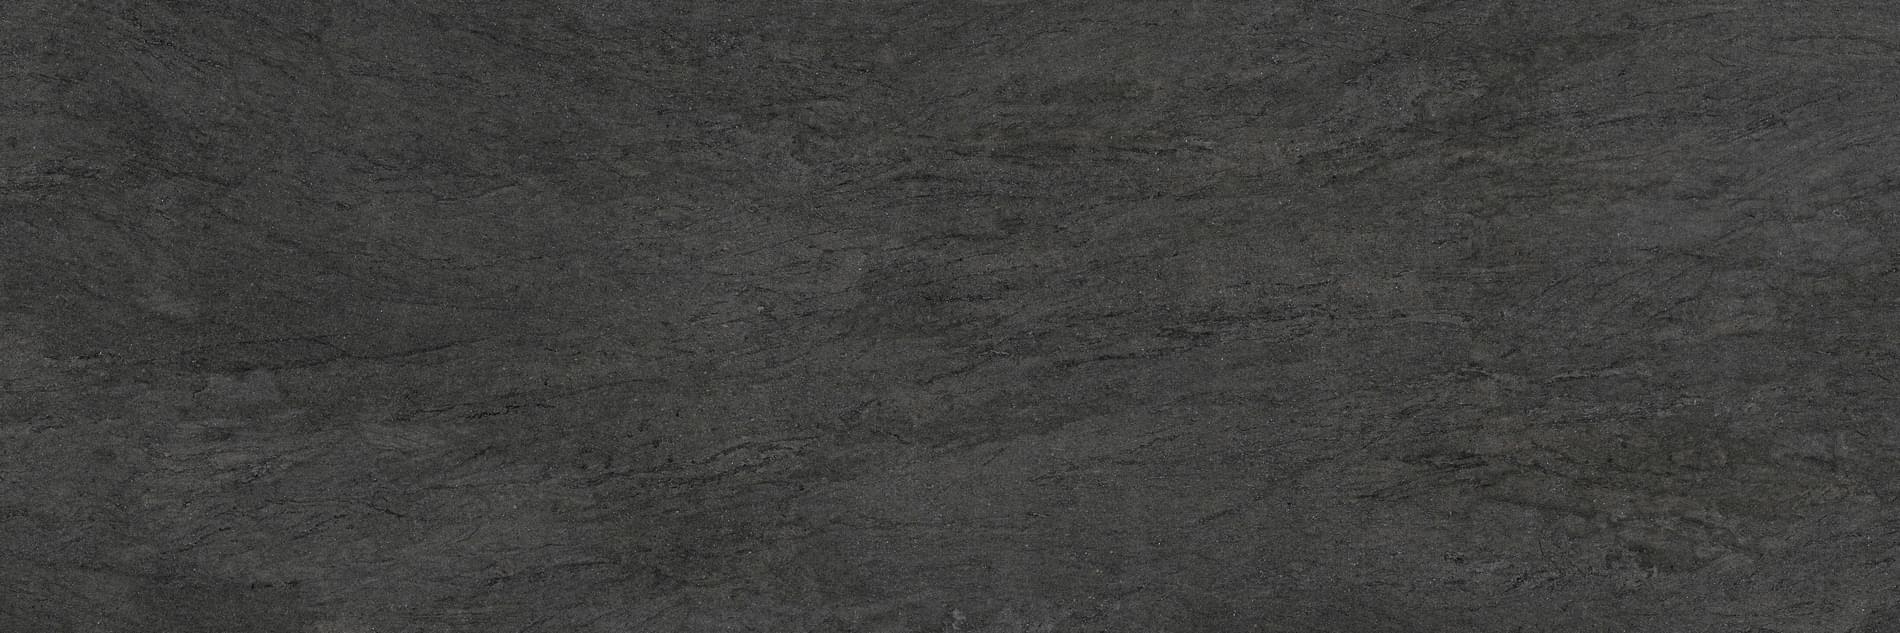 Grespania Basaltina Coverlam Negro 3.5 mm 100x300